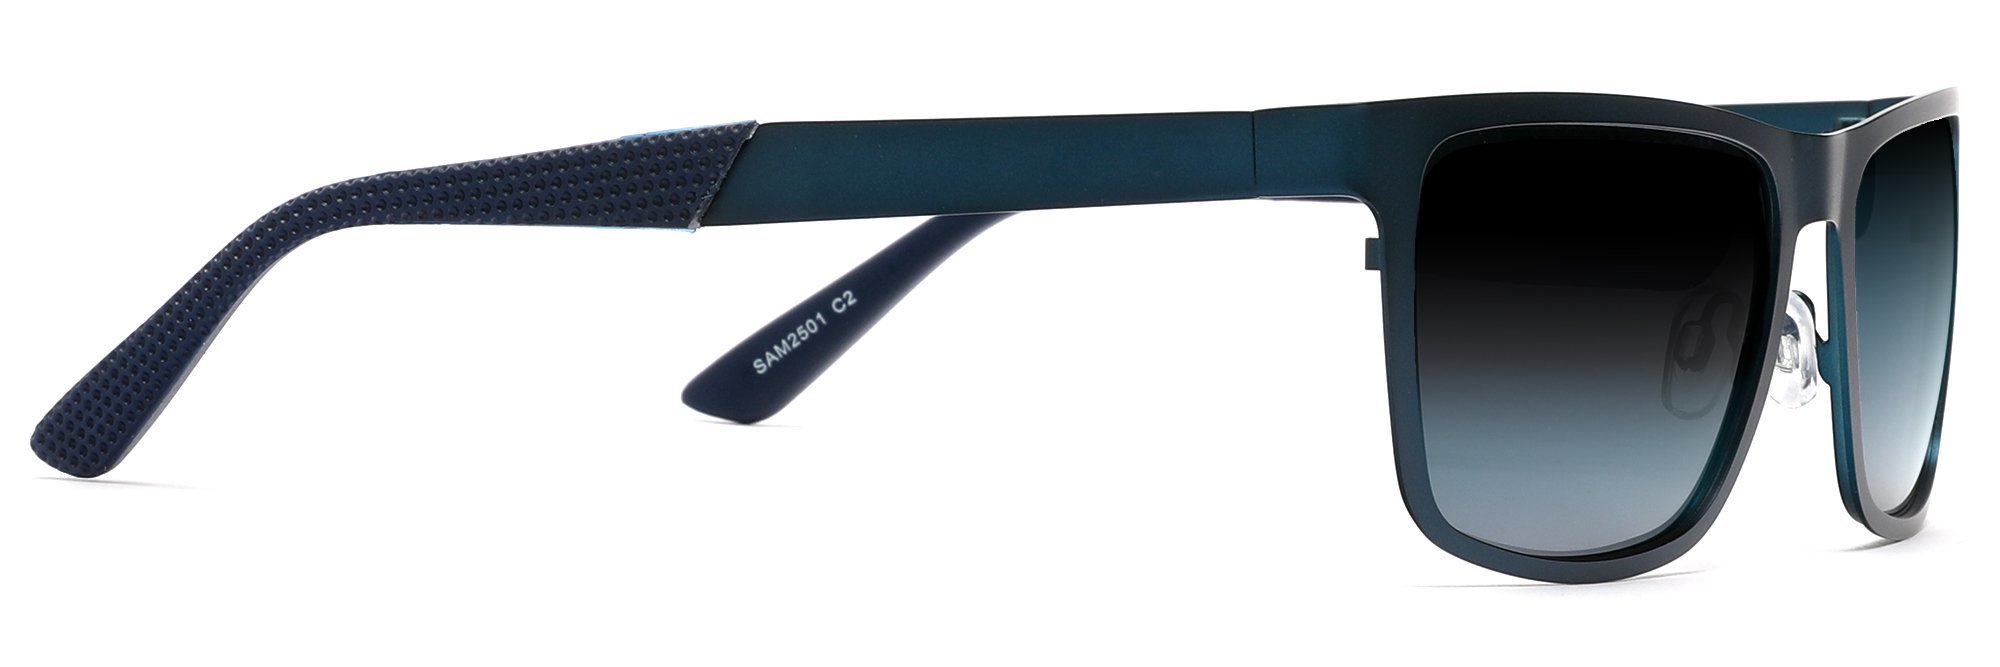 Polarized Classic Sunglasses Razor Thin Brushed Metal Stainless Steel Blue-Samba Shades